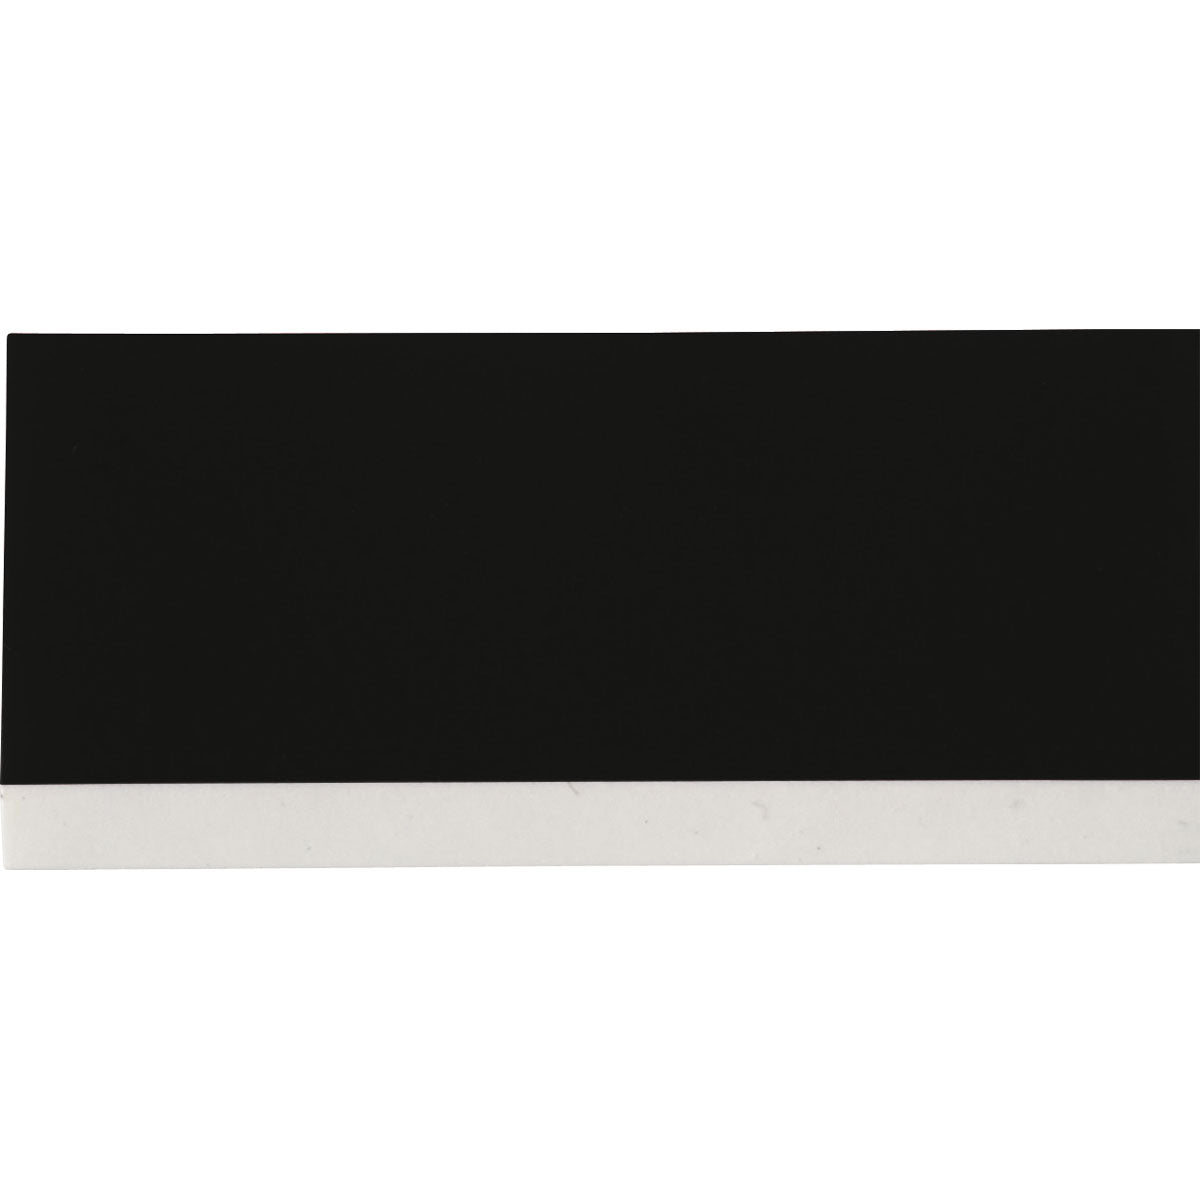 Cartucho de etiquetas (color blanco sobre negro), vinilo